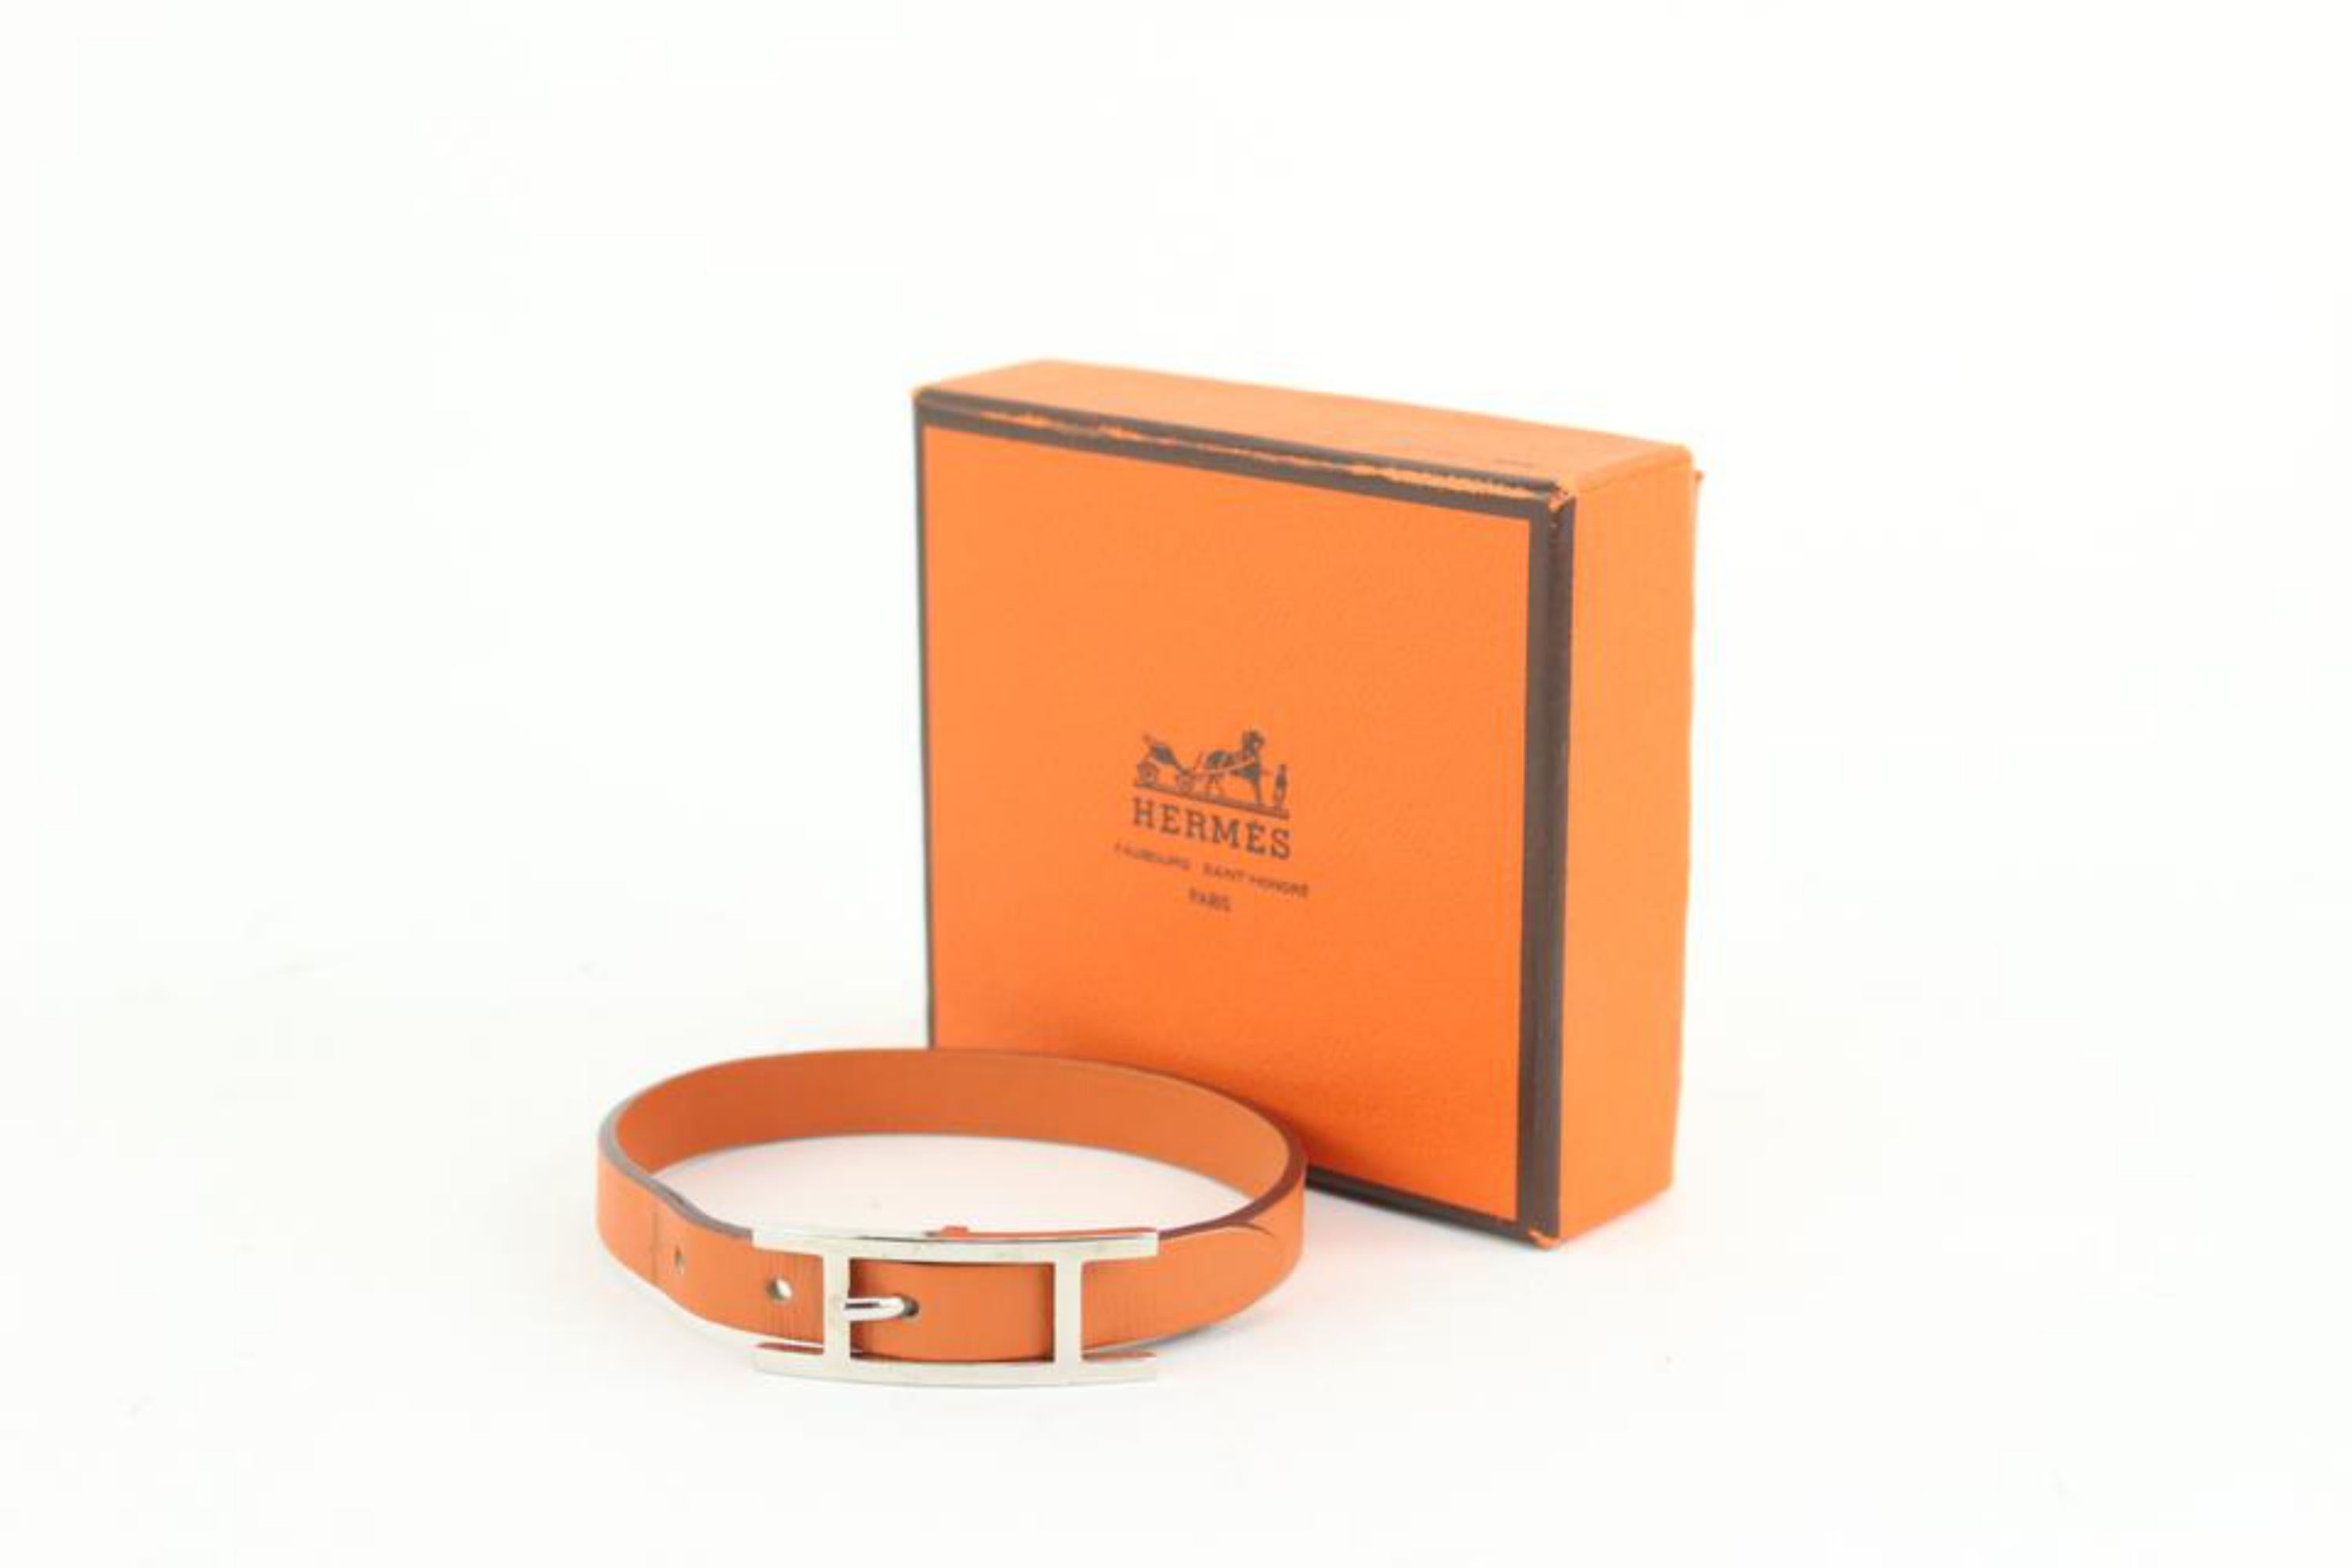 Hermès Bracelet en cuir orange et argent H Api 16h23
Code de date/Numéro de série : J dans un carré
Dimensions : Longueur : 2.2